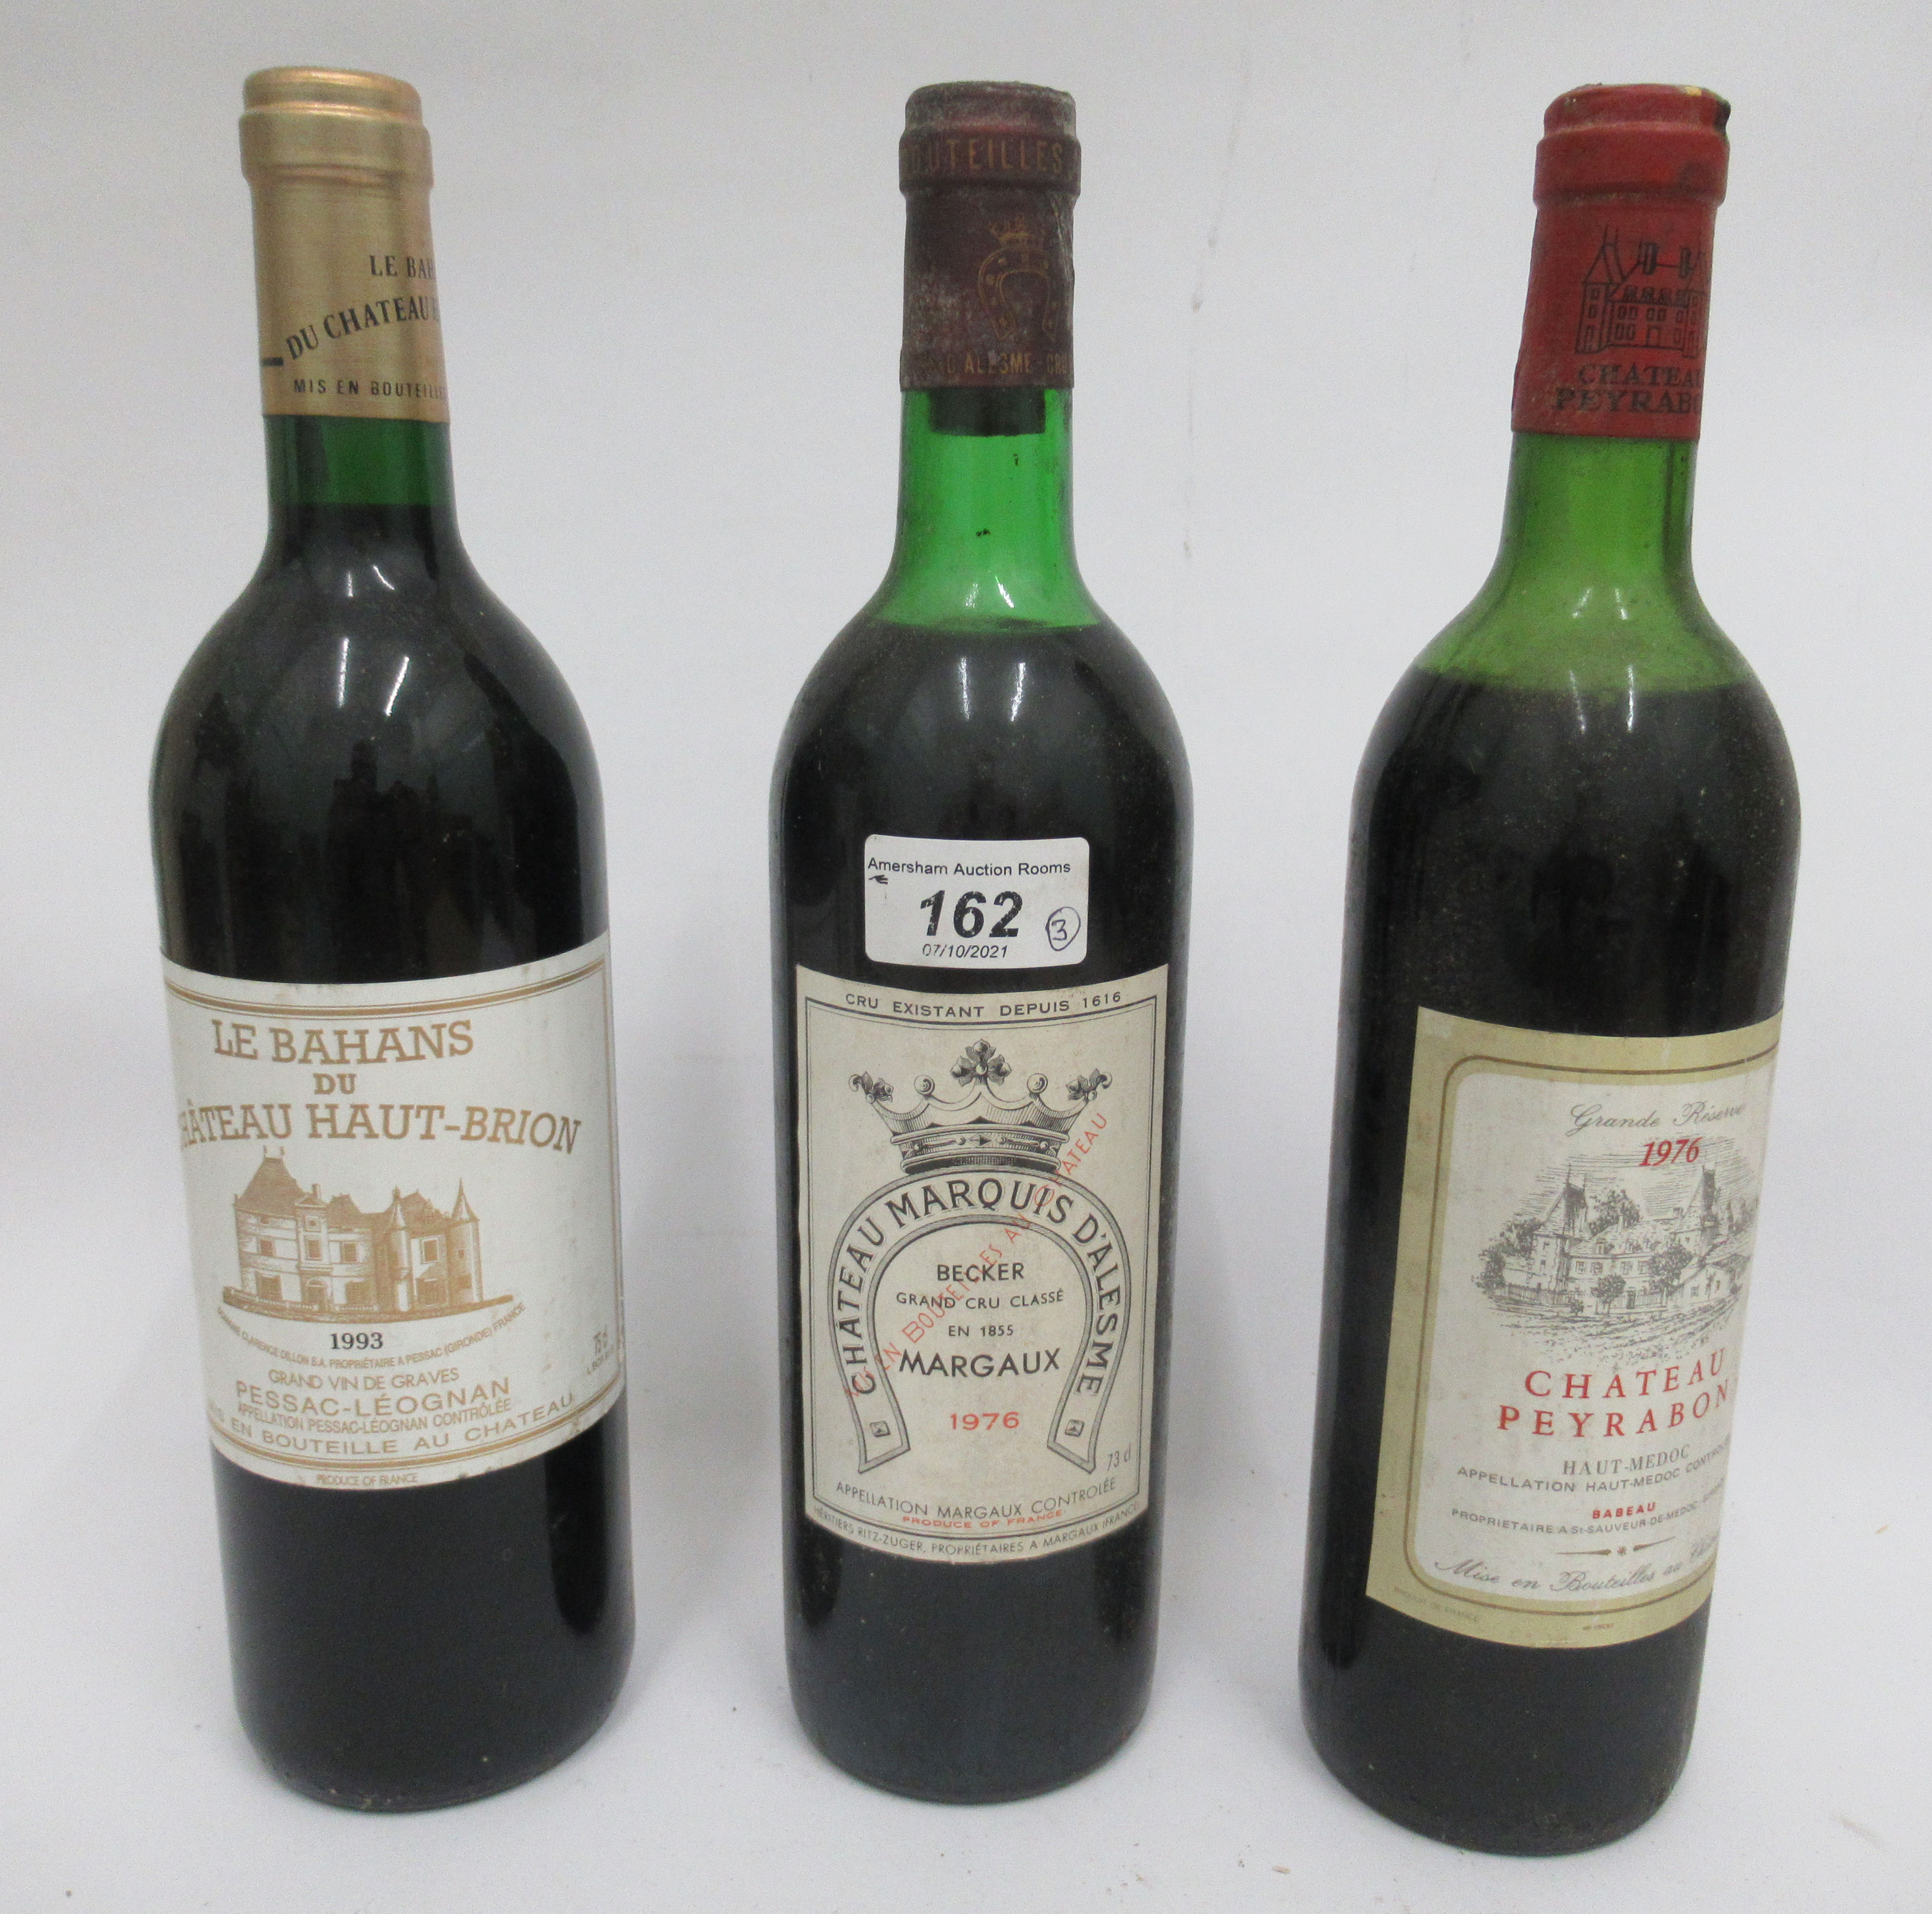 Wine, viz, 1976 Chateau Peyrabon; 1976 Chateau Marquis D'Lesme; and 1993 Le Bahans